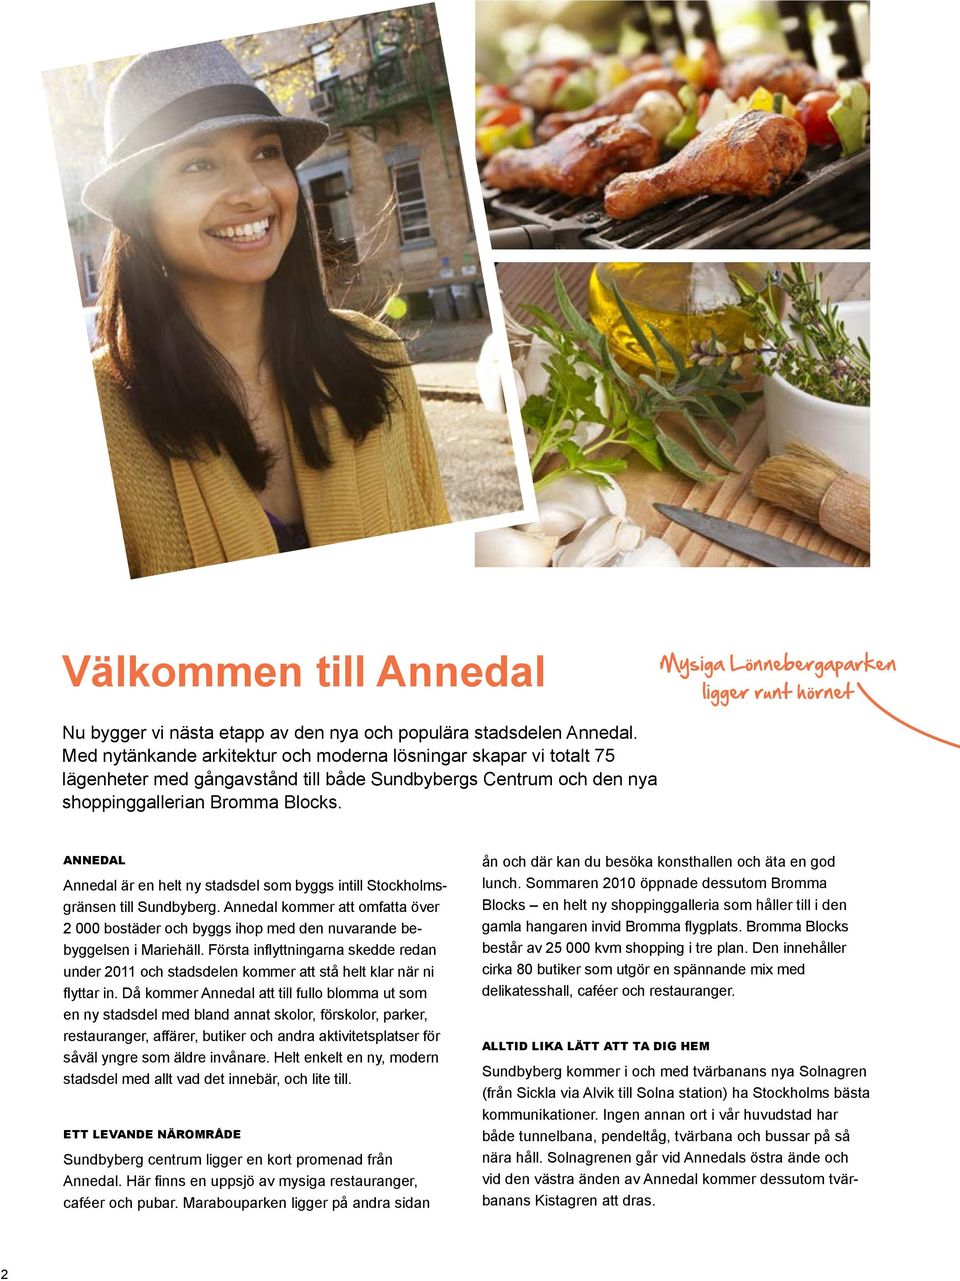 Annedal Annedal är en helt ny stadsdel som byggs intill Stockholmsgränsen till Sundbyberg. Annedal kommer att omfatta över 2 000 bostäder och byggs ihop med den nuvarande bebyggelsen i Mariehäll.